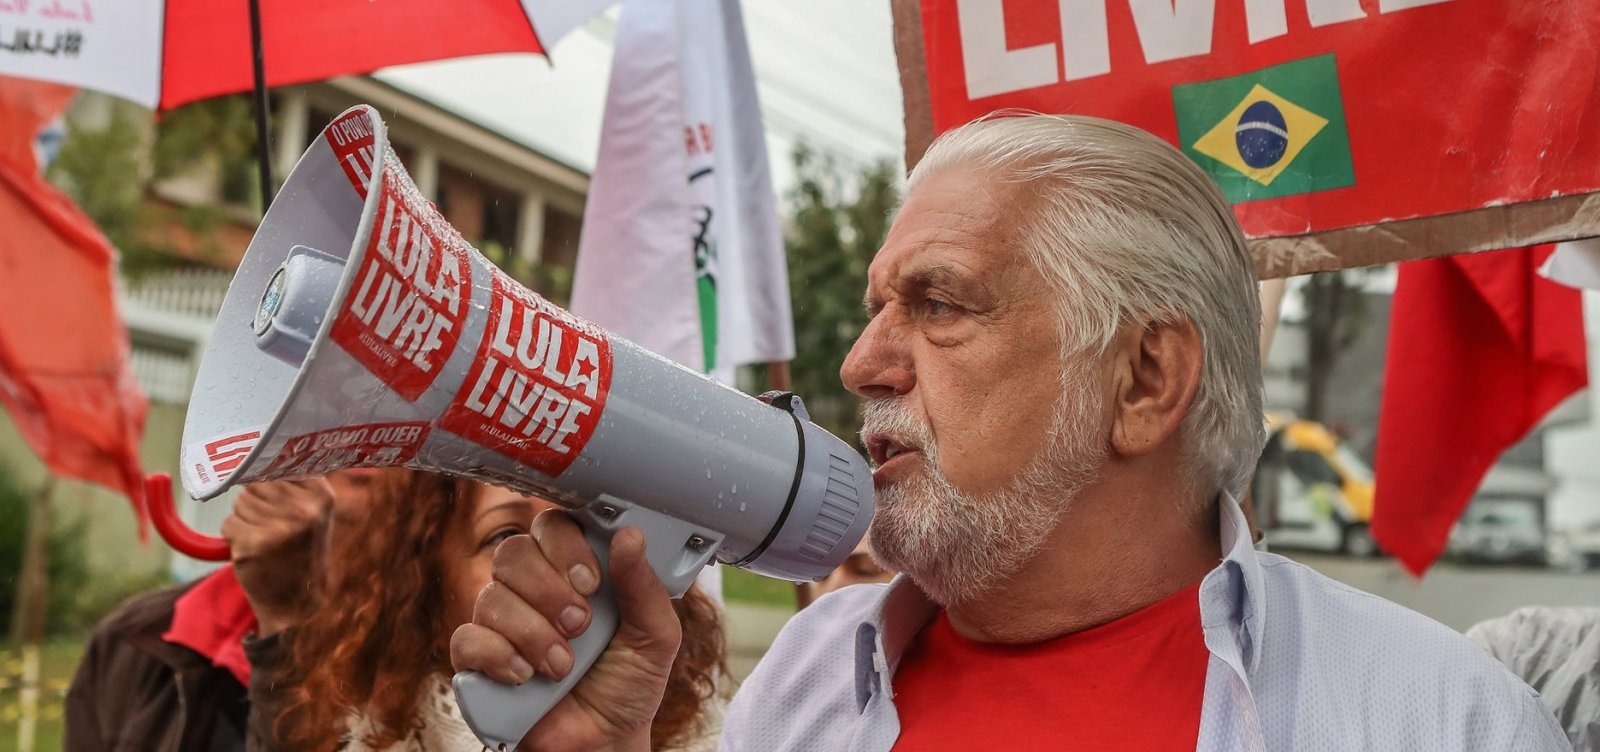 Jaques Wagner volta a ser principal cotado para substituir Lula na eleição, diz coluna